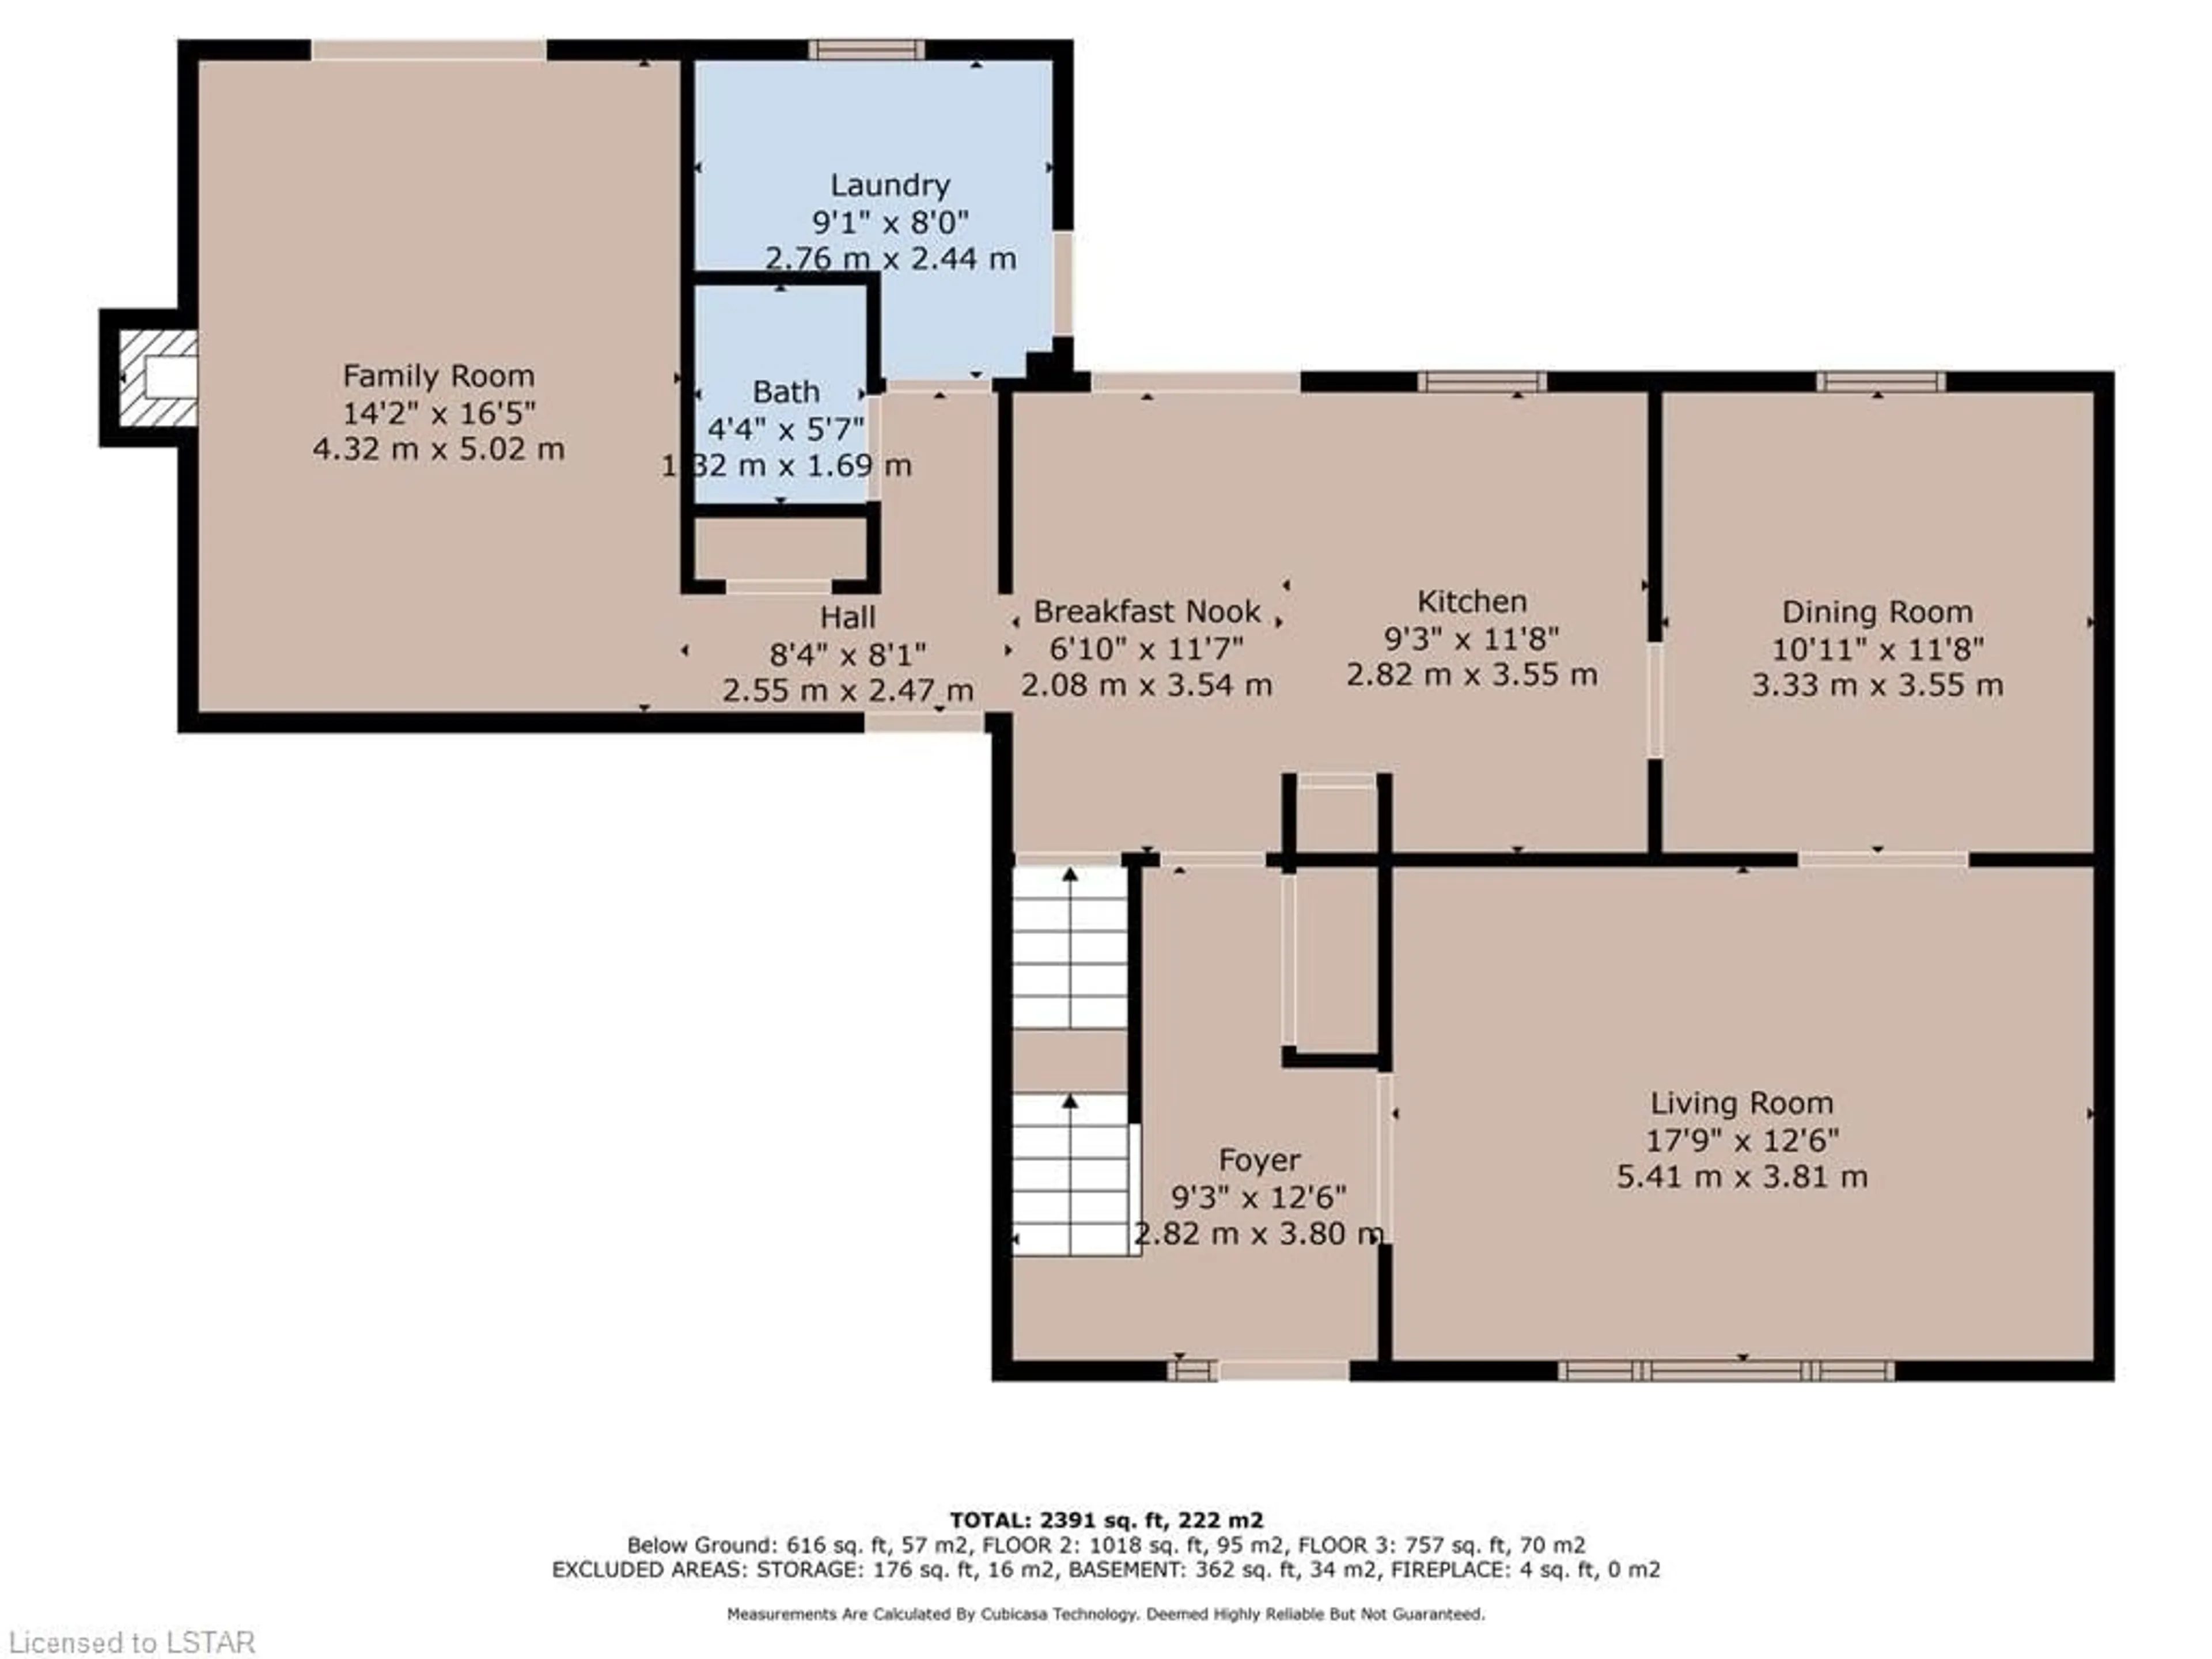 Floor plan for 734 Widmore Dr, London Ontario N6J 4C1